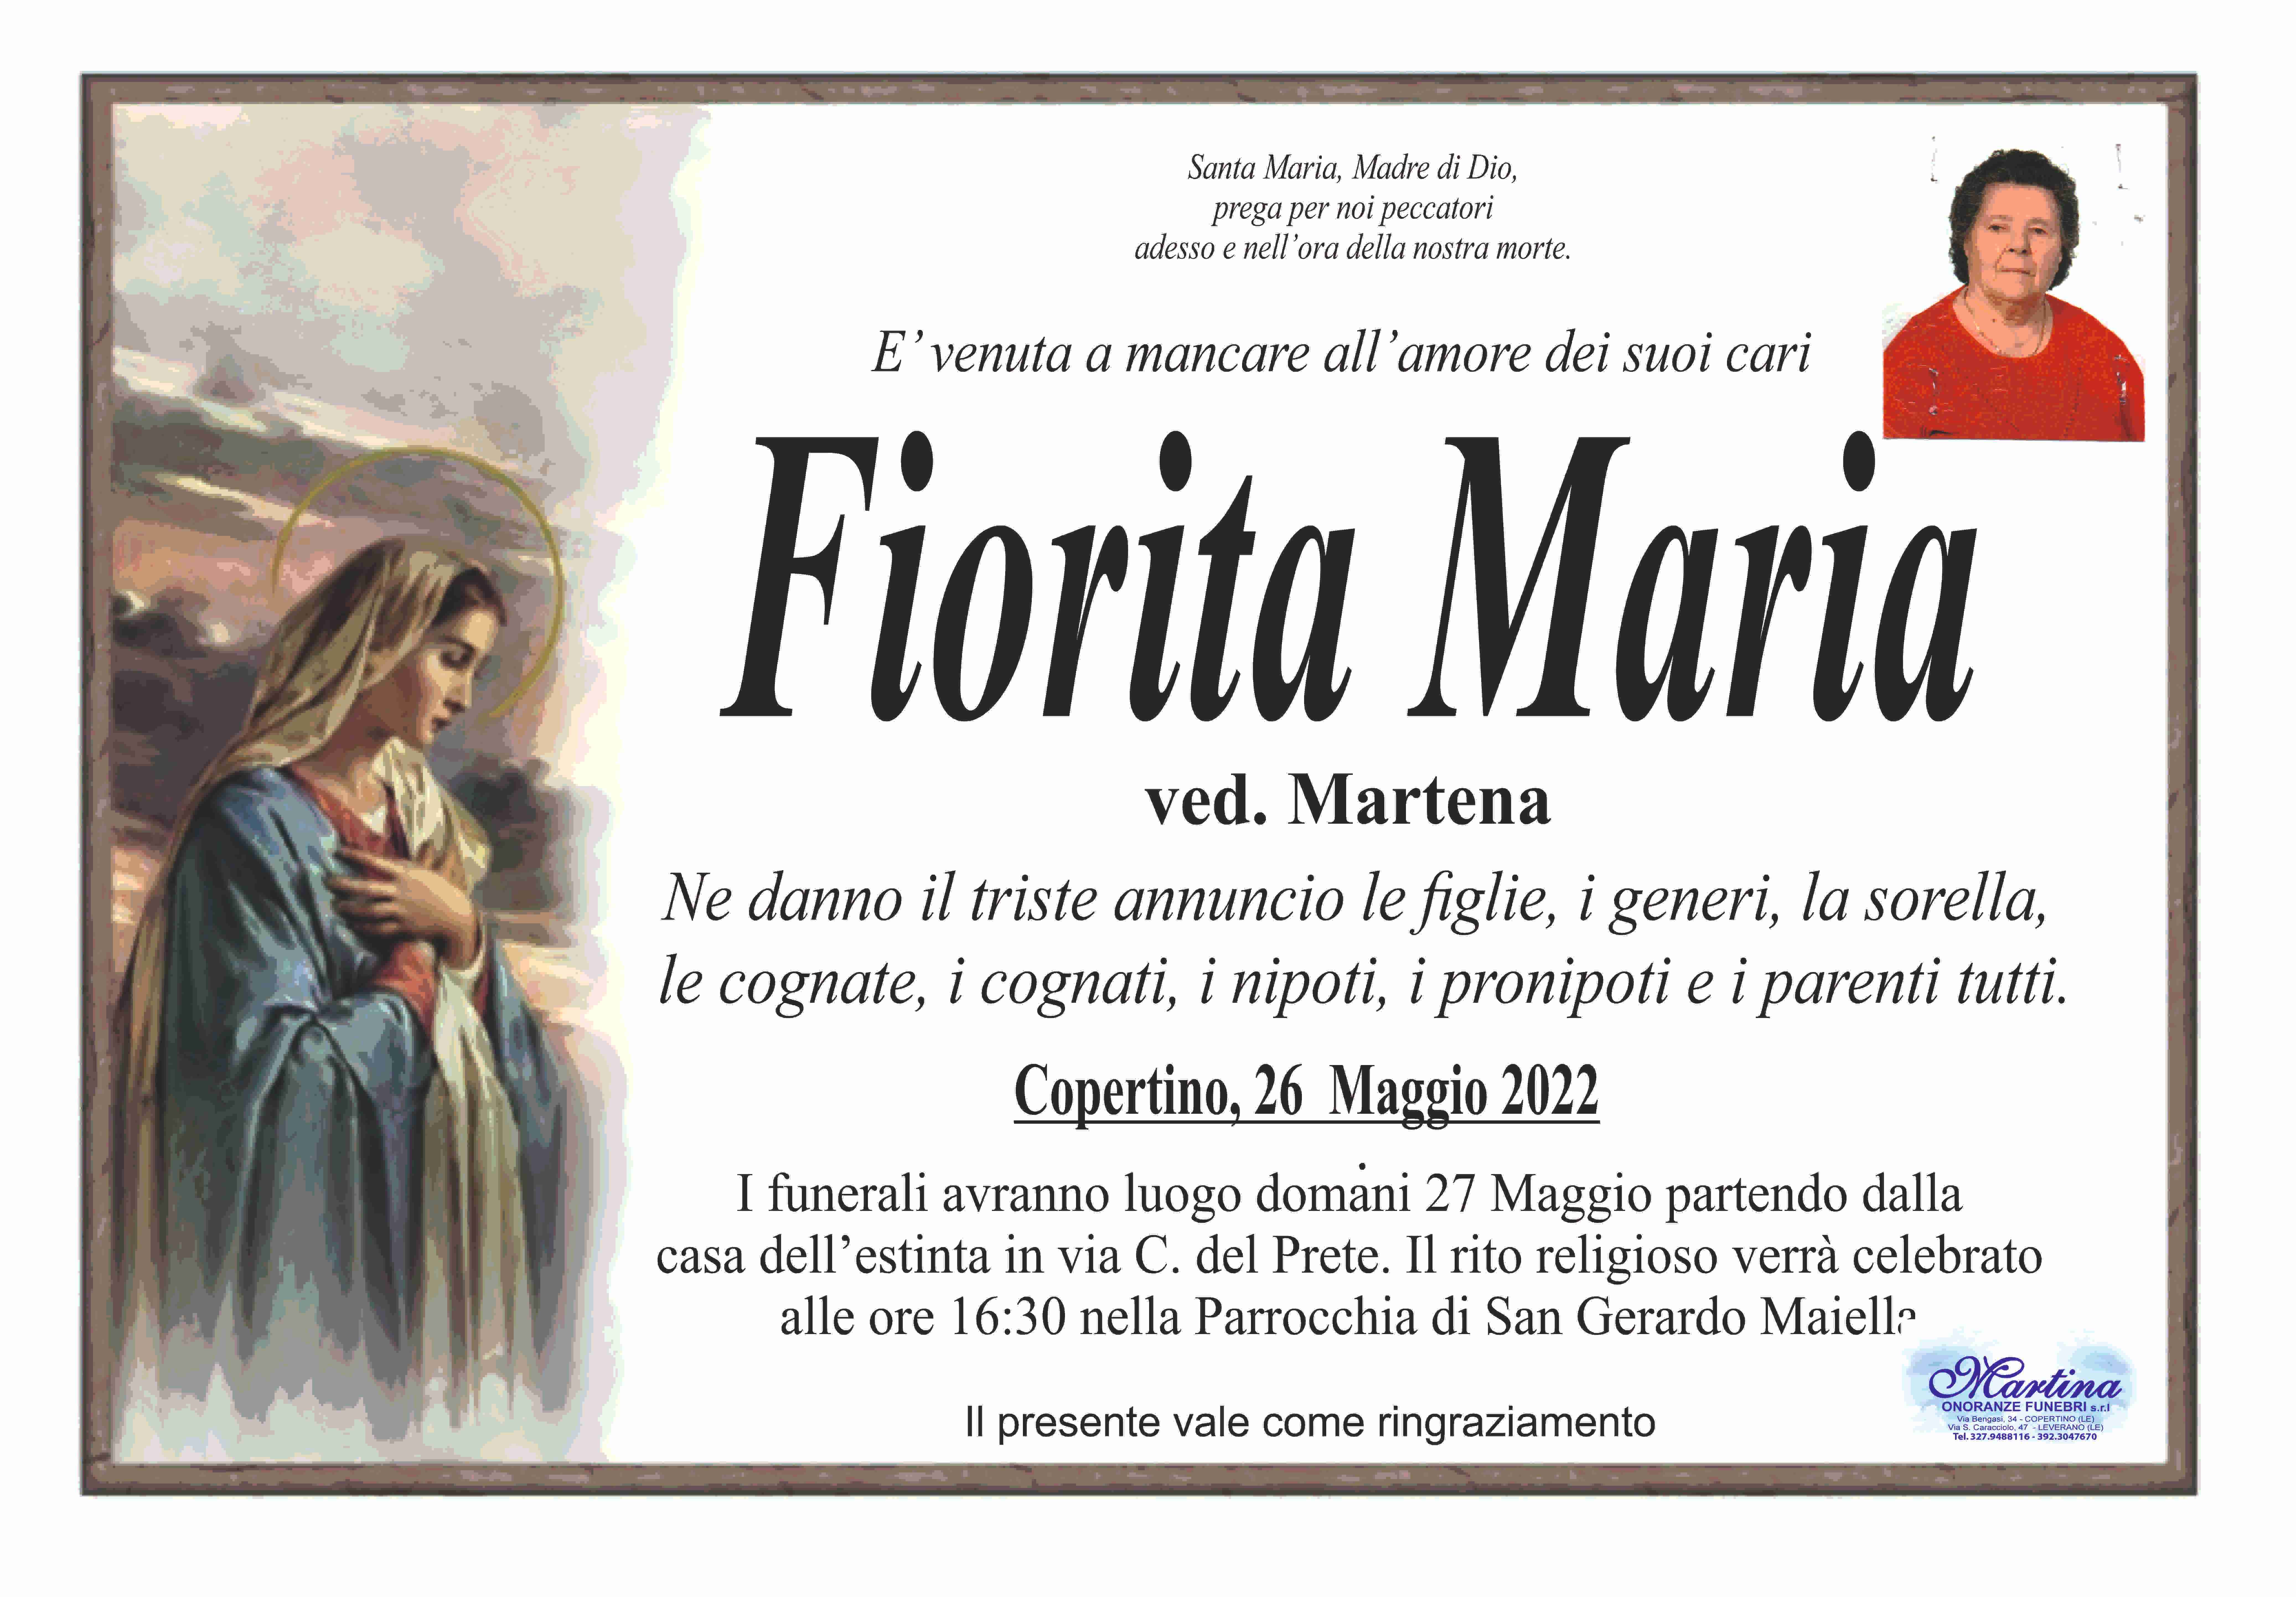 Maria Fiorita